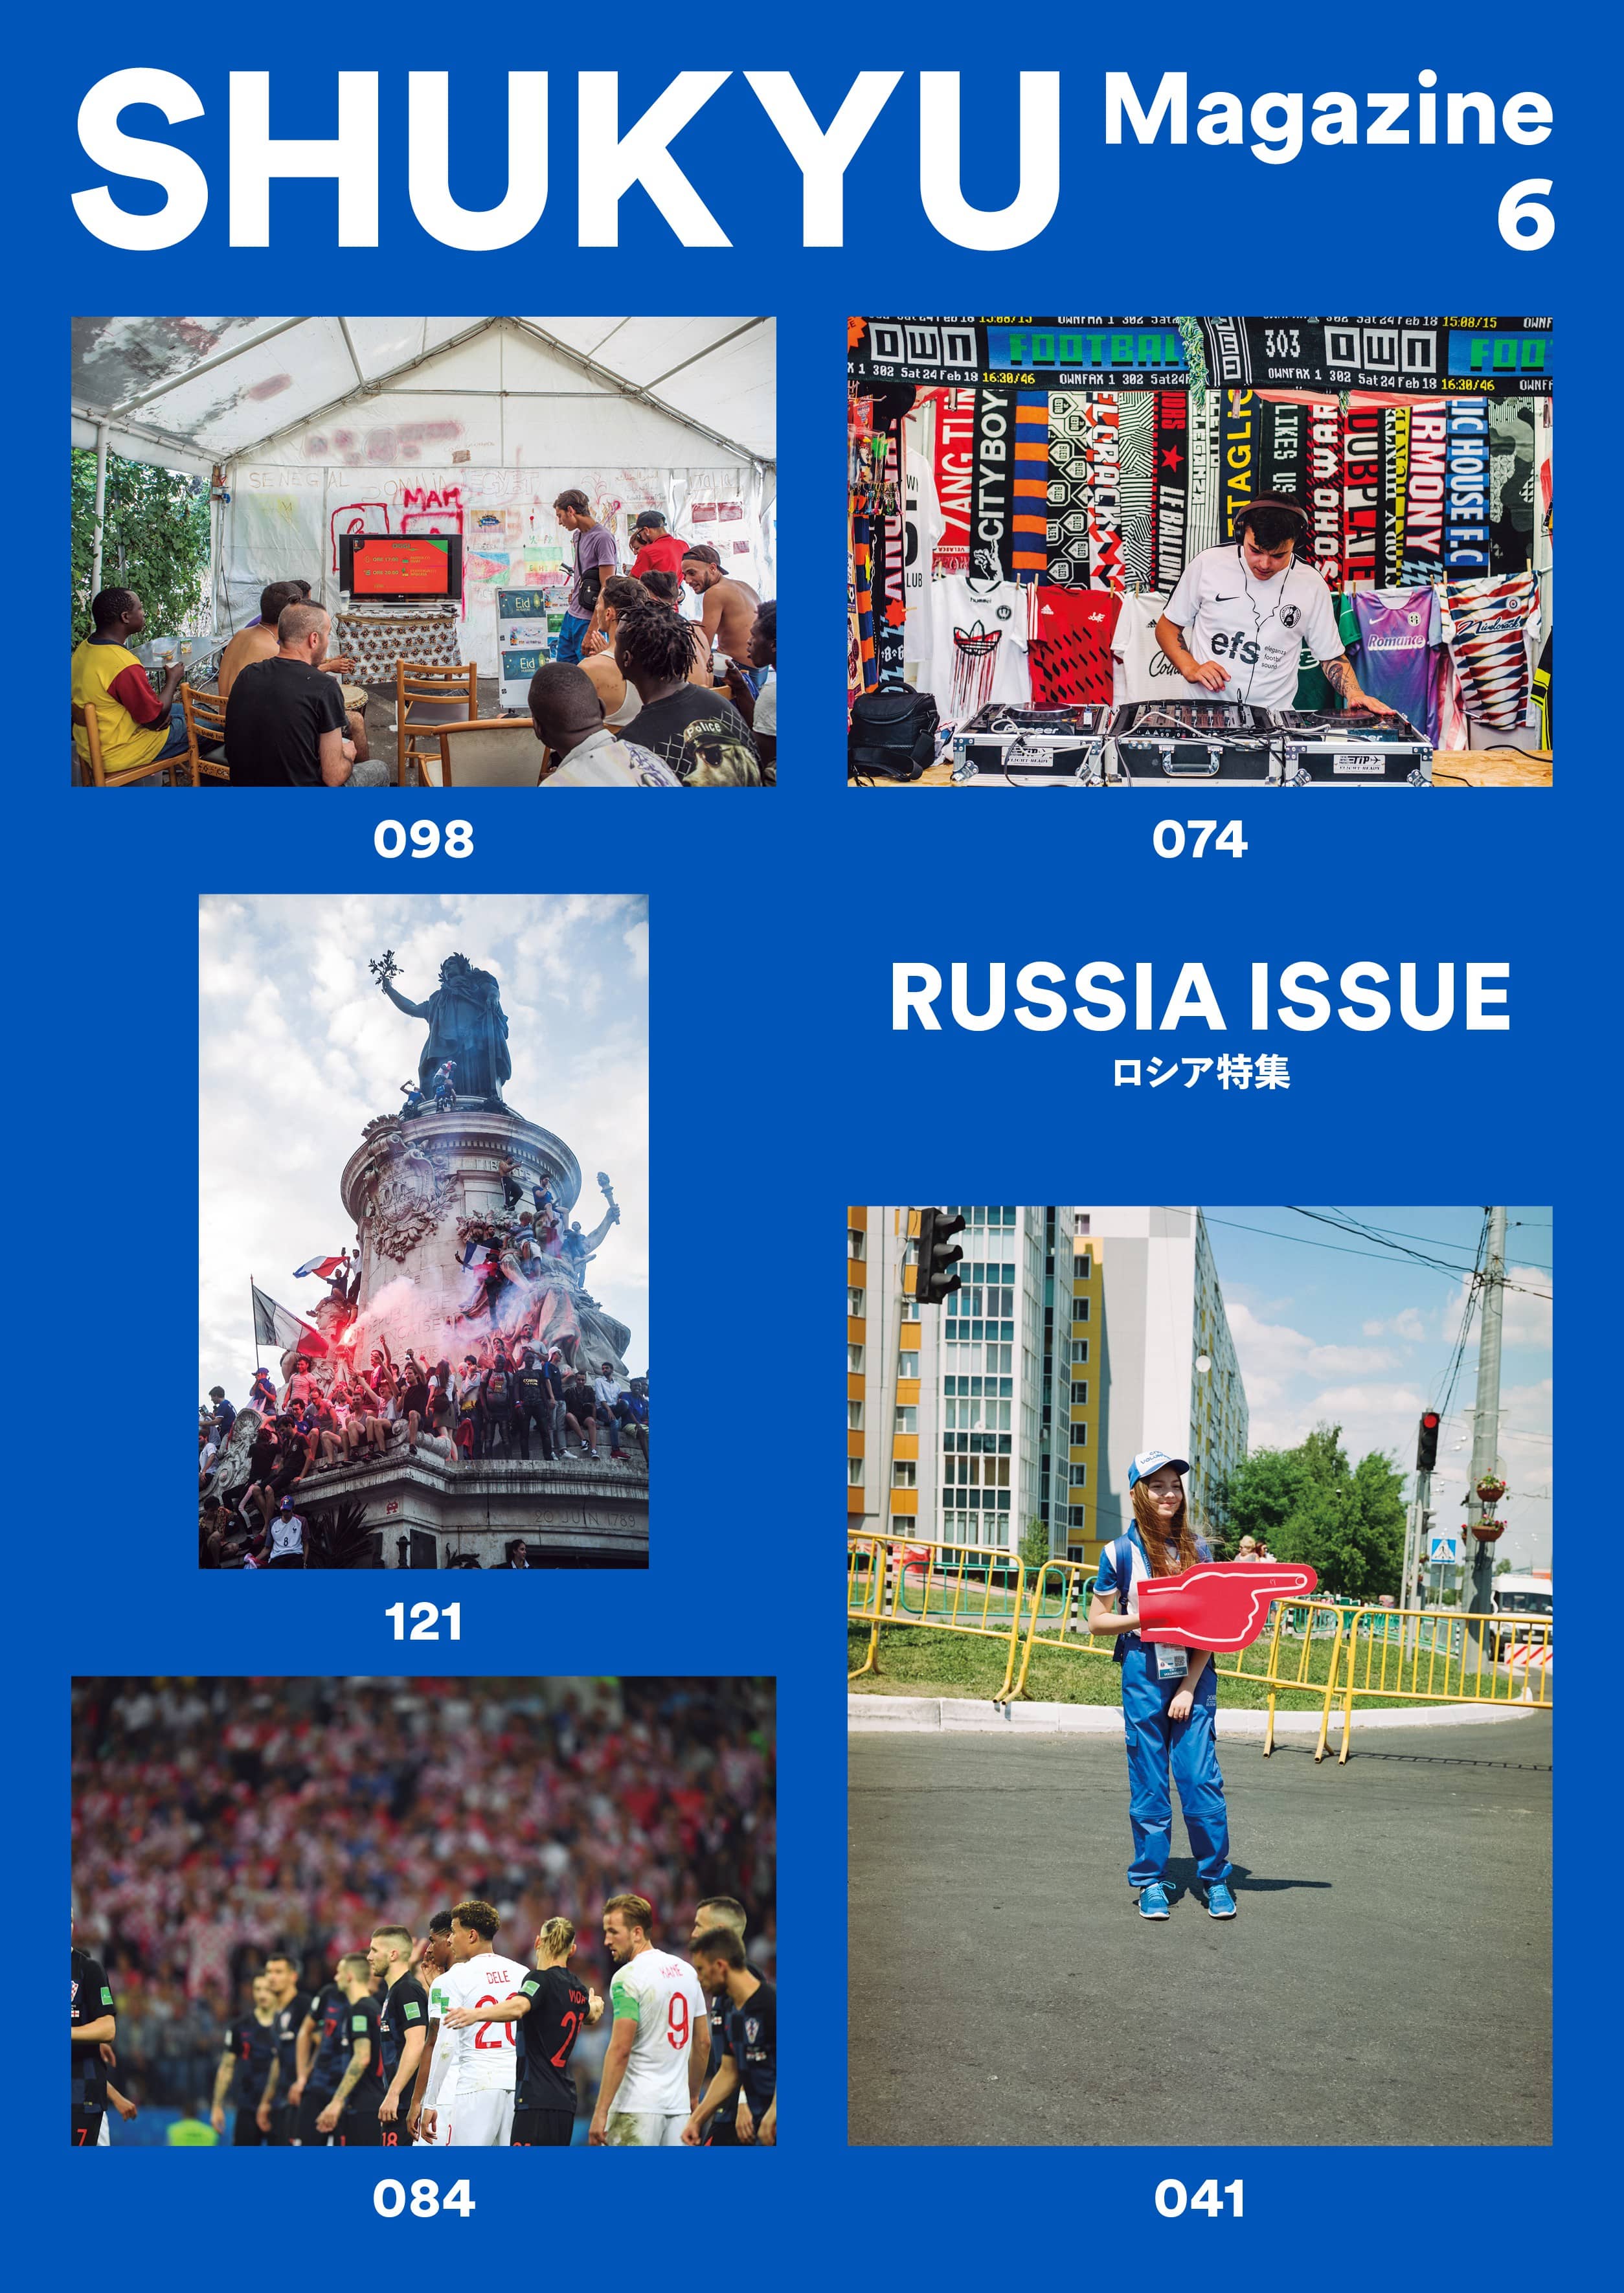 SHUKYU Magazine RUSSIA ISSUE